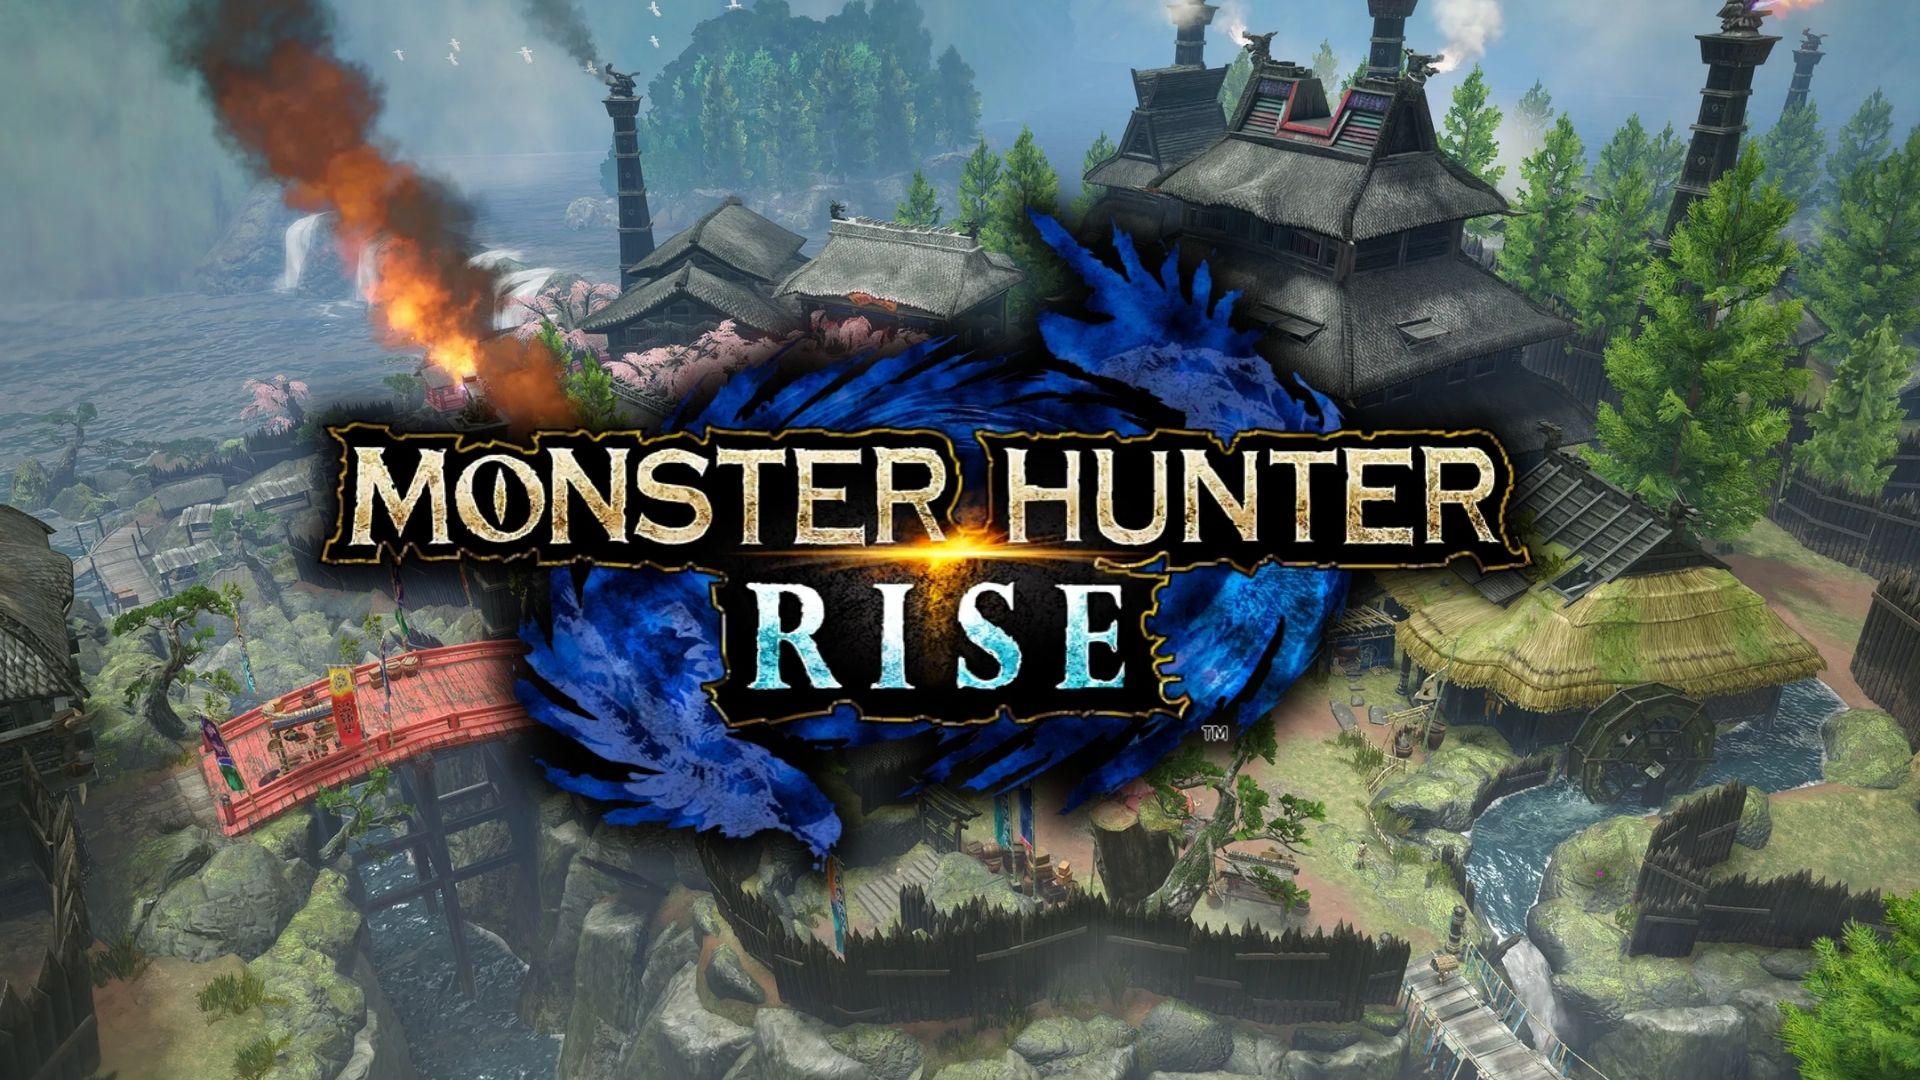 Monster Hunter Rise PC gameplay : r/MonsterHunter